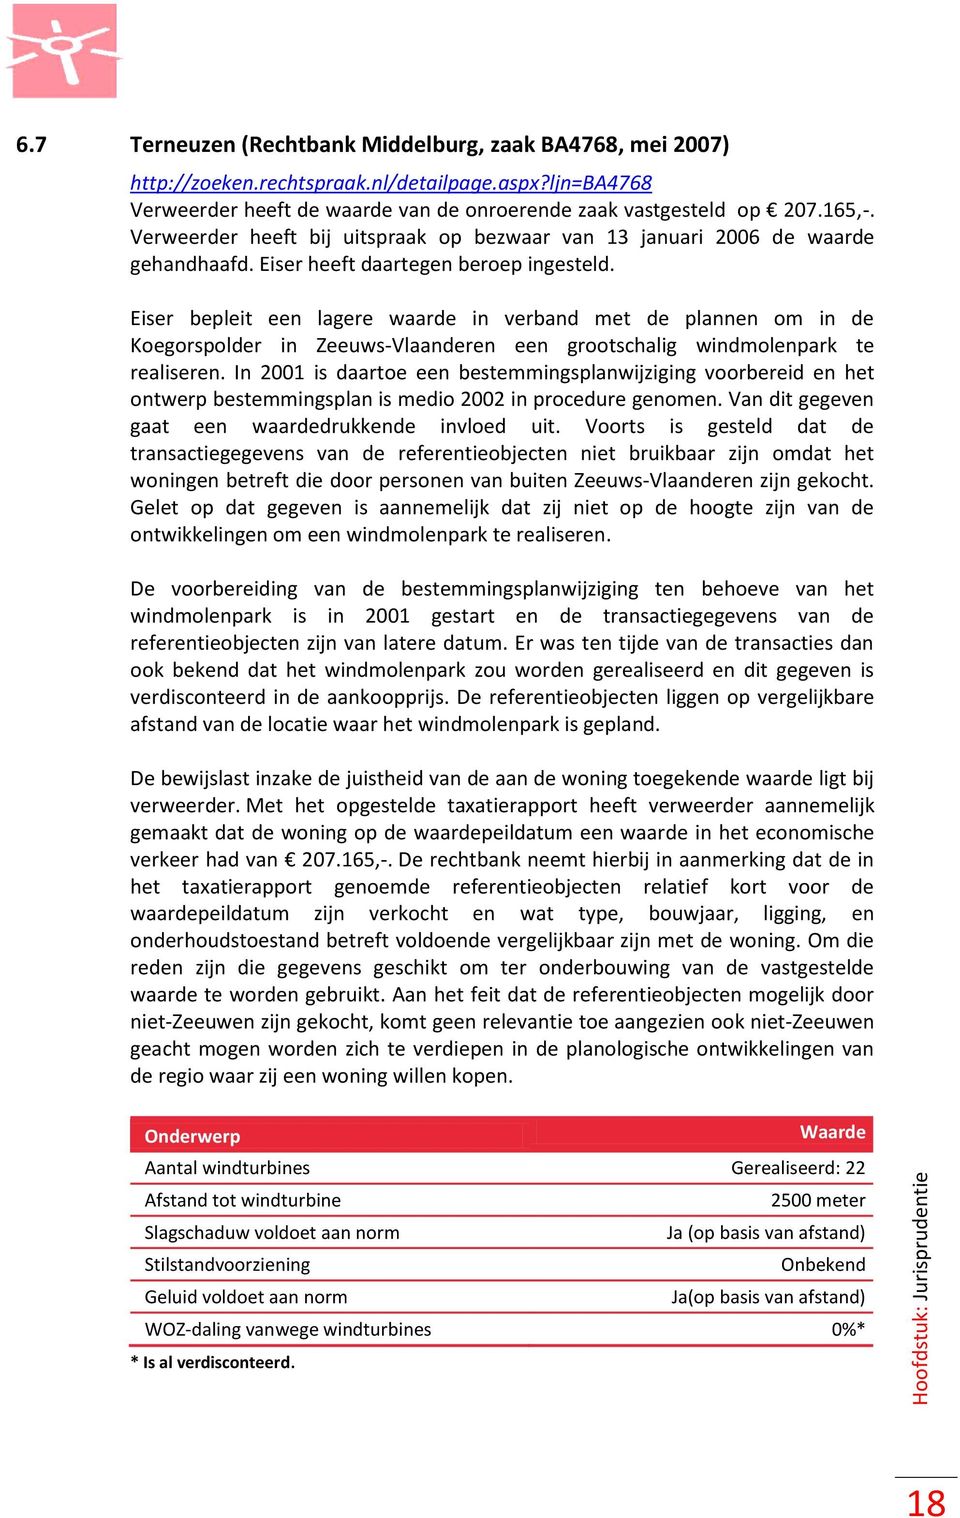 Eiser bepleit een lagere waarde in verband met de plannen om in de Koegorspolder in Zeeuws-Vlaanderen een grootschalig windmolenpark te realiseren.